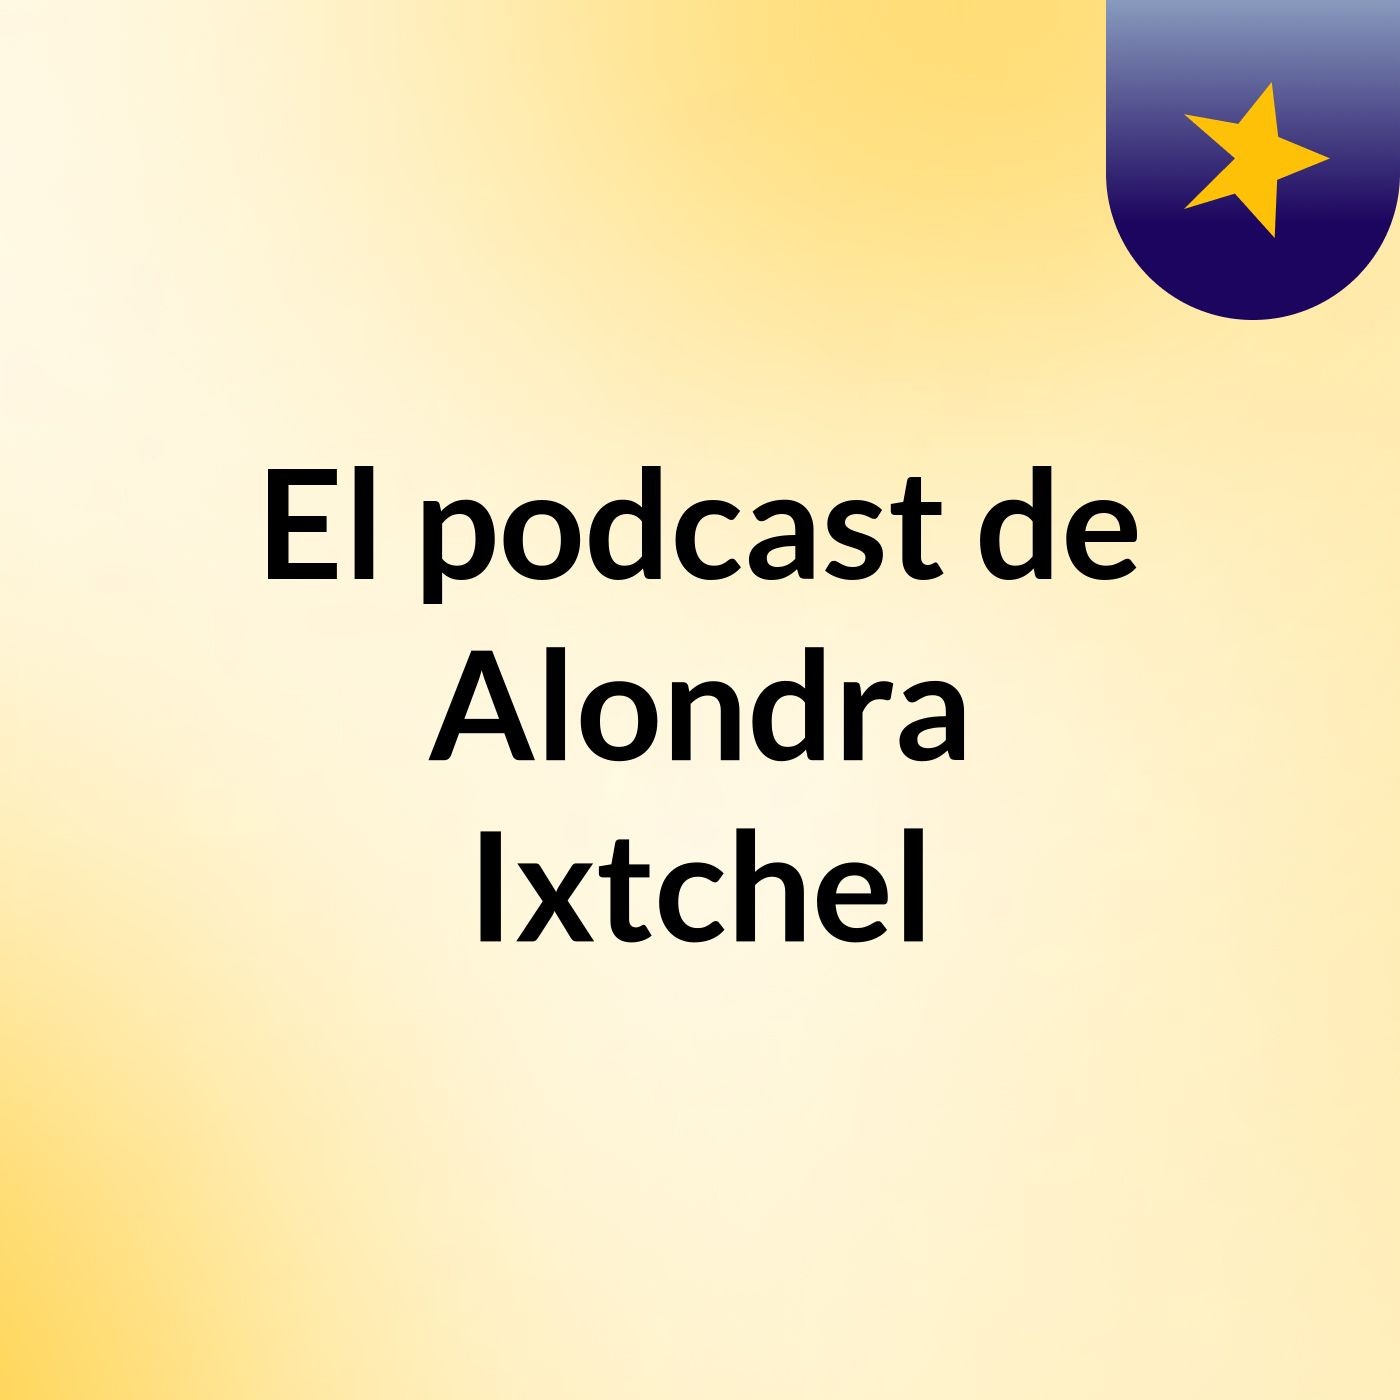 El podcast de Alondra Ixtchel